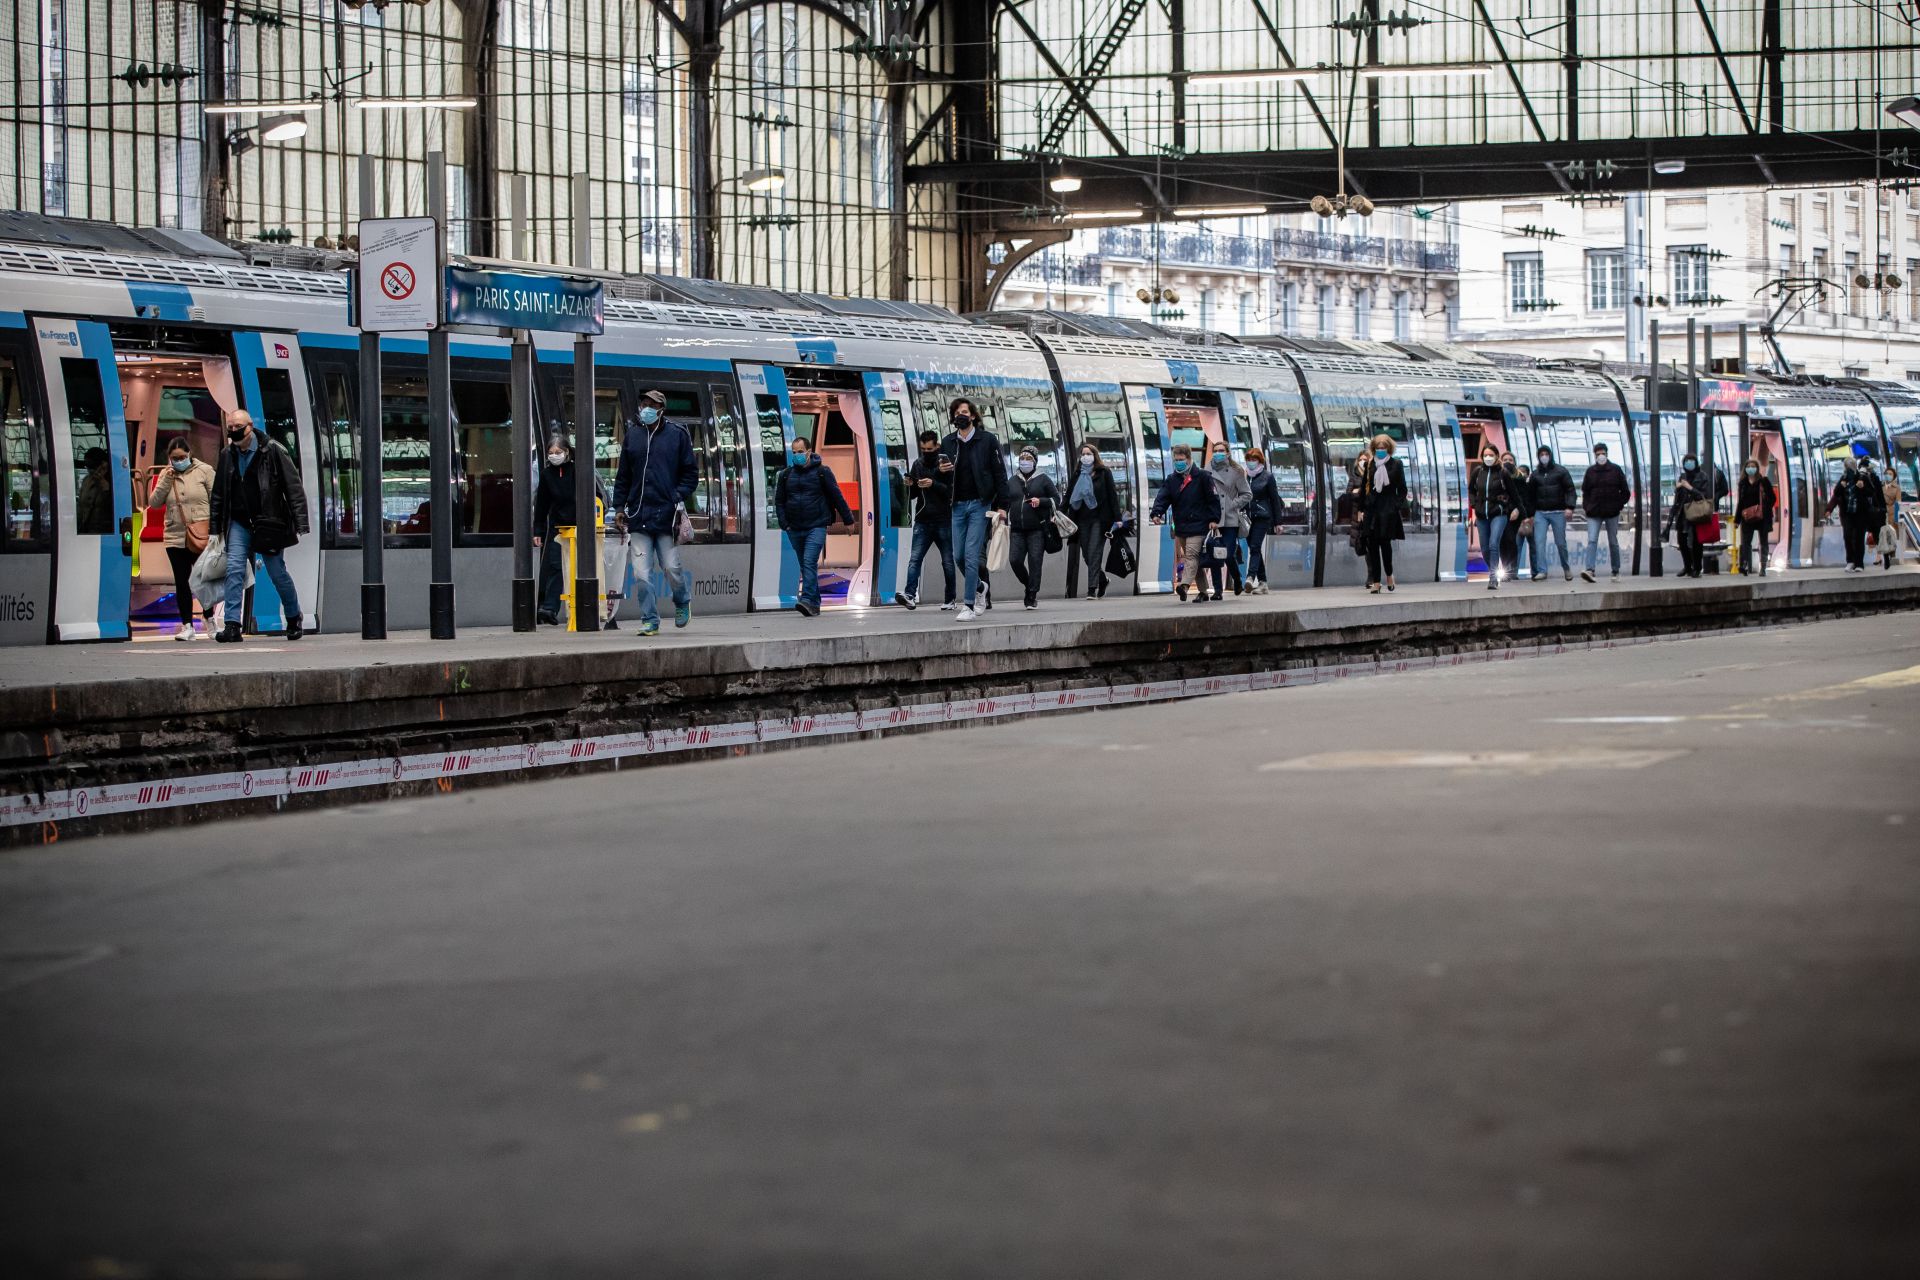  Пътниците пристигат на жп гарата Сент Луииз в Париж